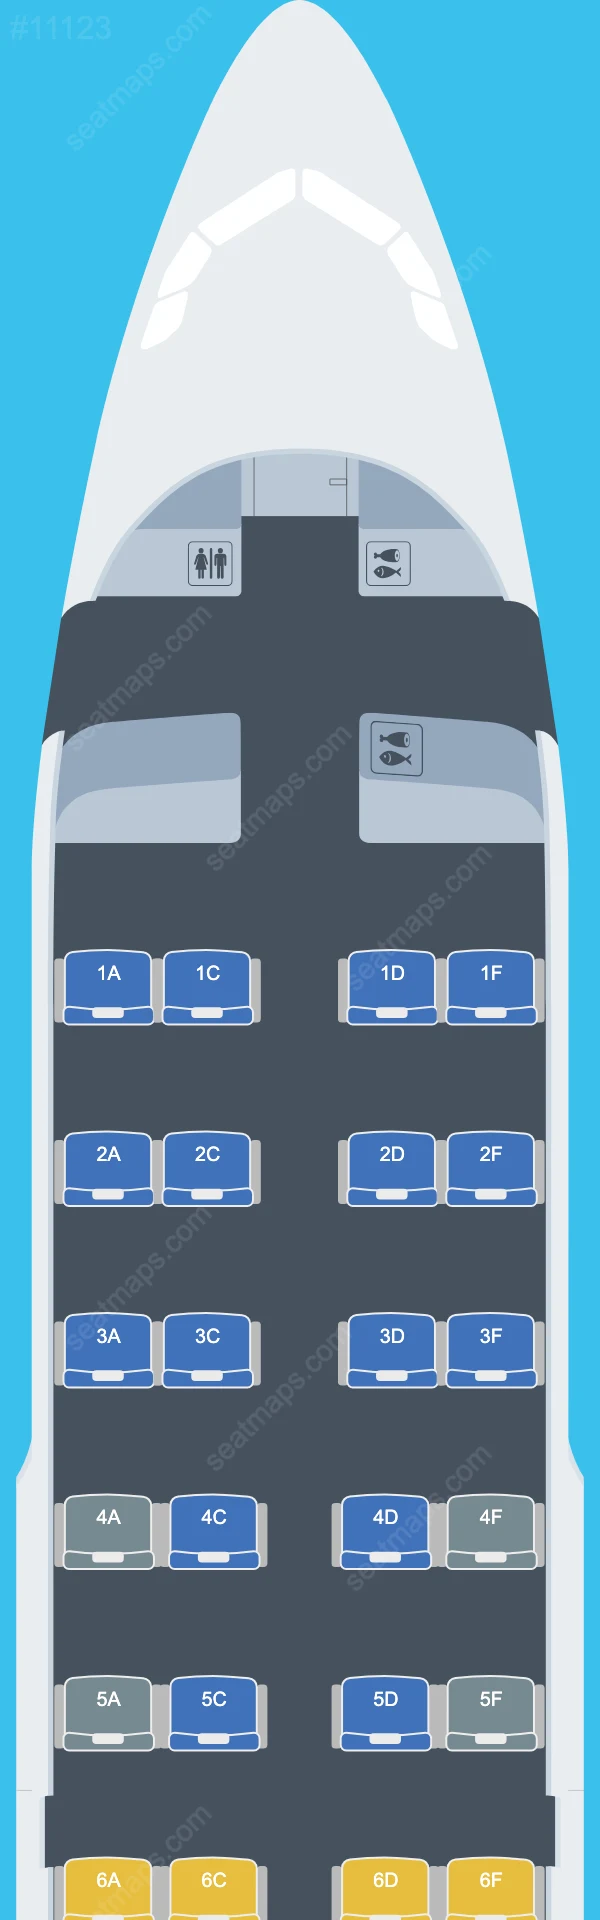 Skytraders Airbus A319 Peta Kursi A319-100